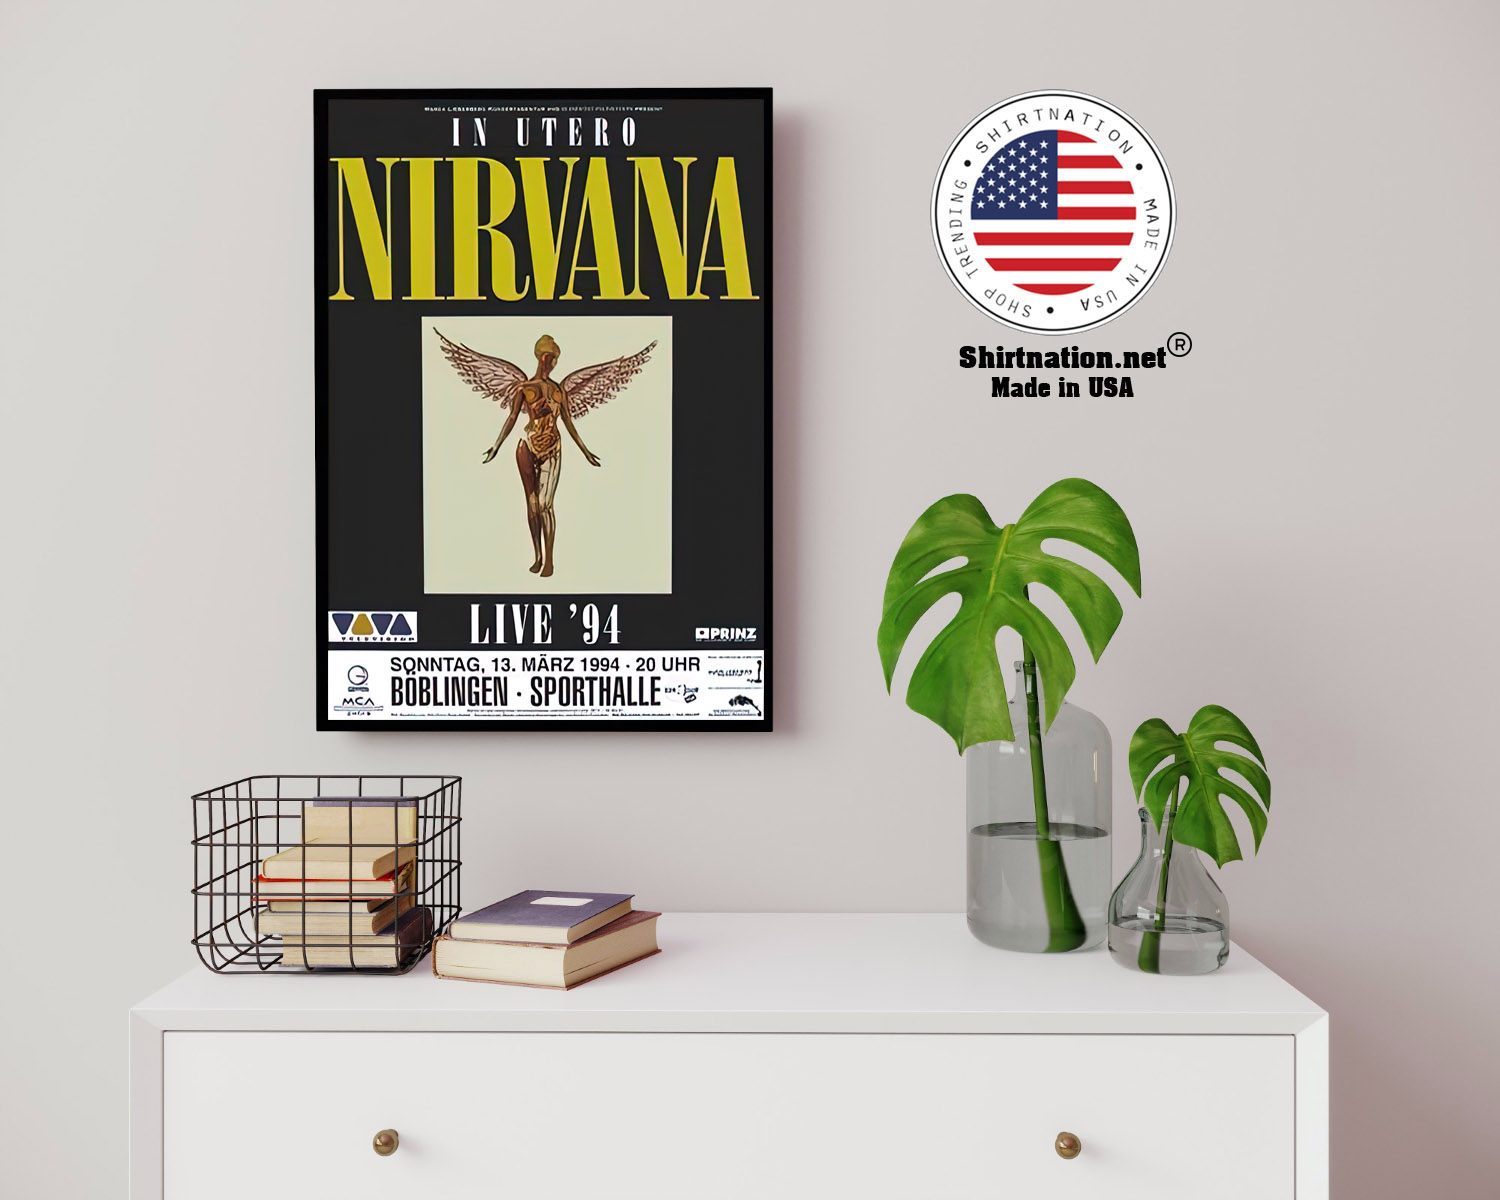 Nirvana live 94 Boblingen poster 13